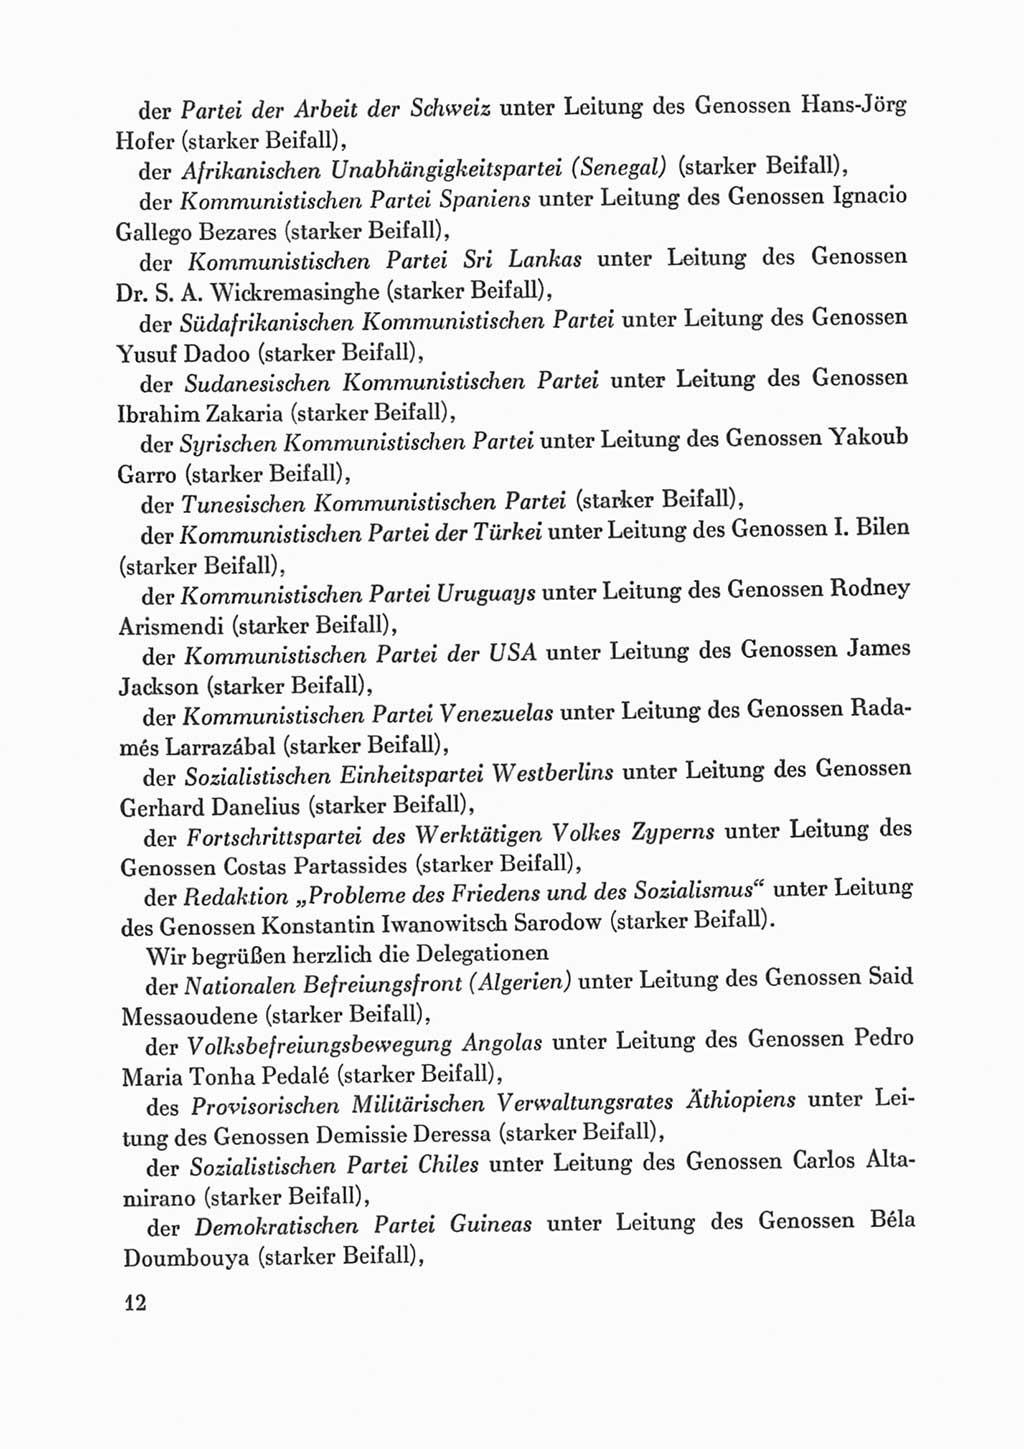 Protokoll der Verhandlungen des Ⅸ. Parteitages der Sozialistischen Einheitspartei Deutschlands (SED) [Deutsche Demokratische Republik (DDR)] 1976, Band 1, Seite 12 (Prot. Verh. Ⅸ. PT SED DDR 1976, Bd. 1, S. 12)